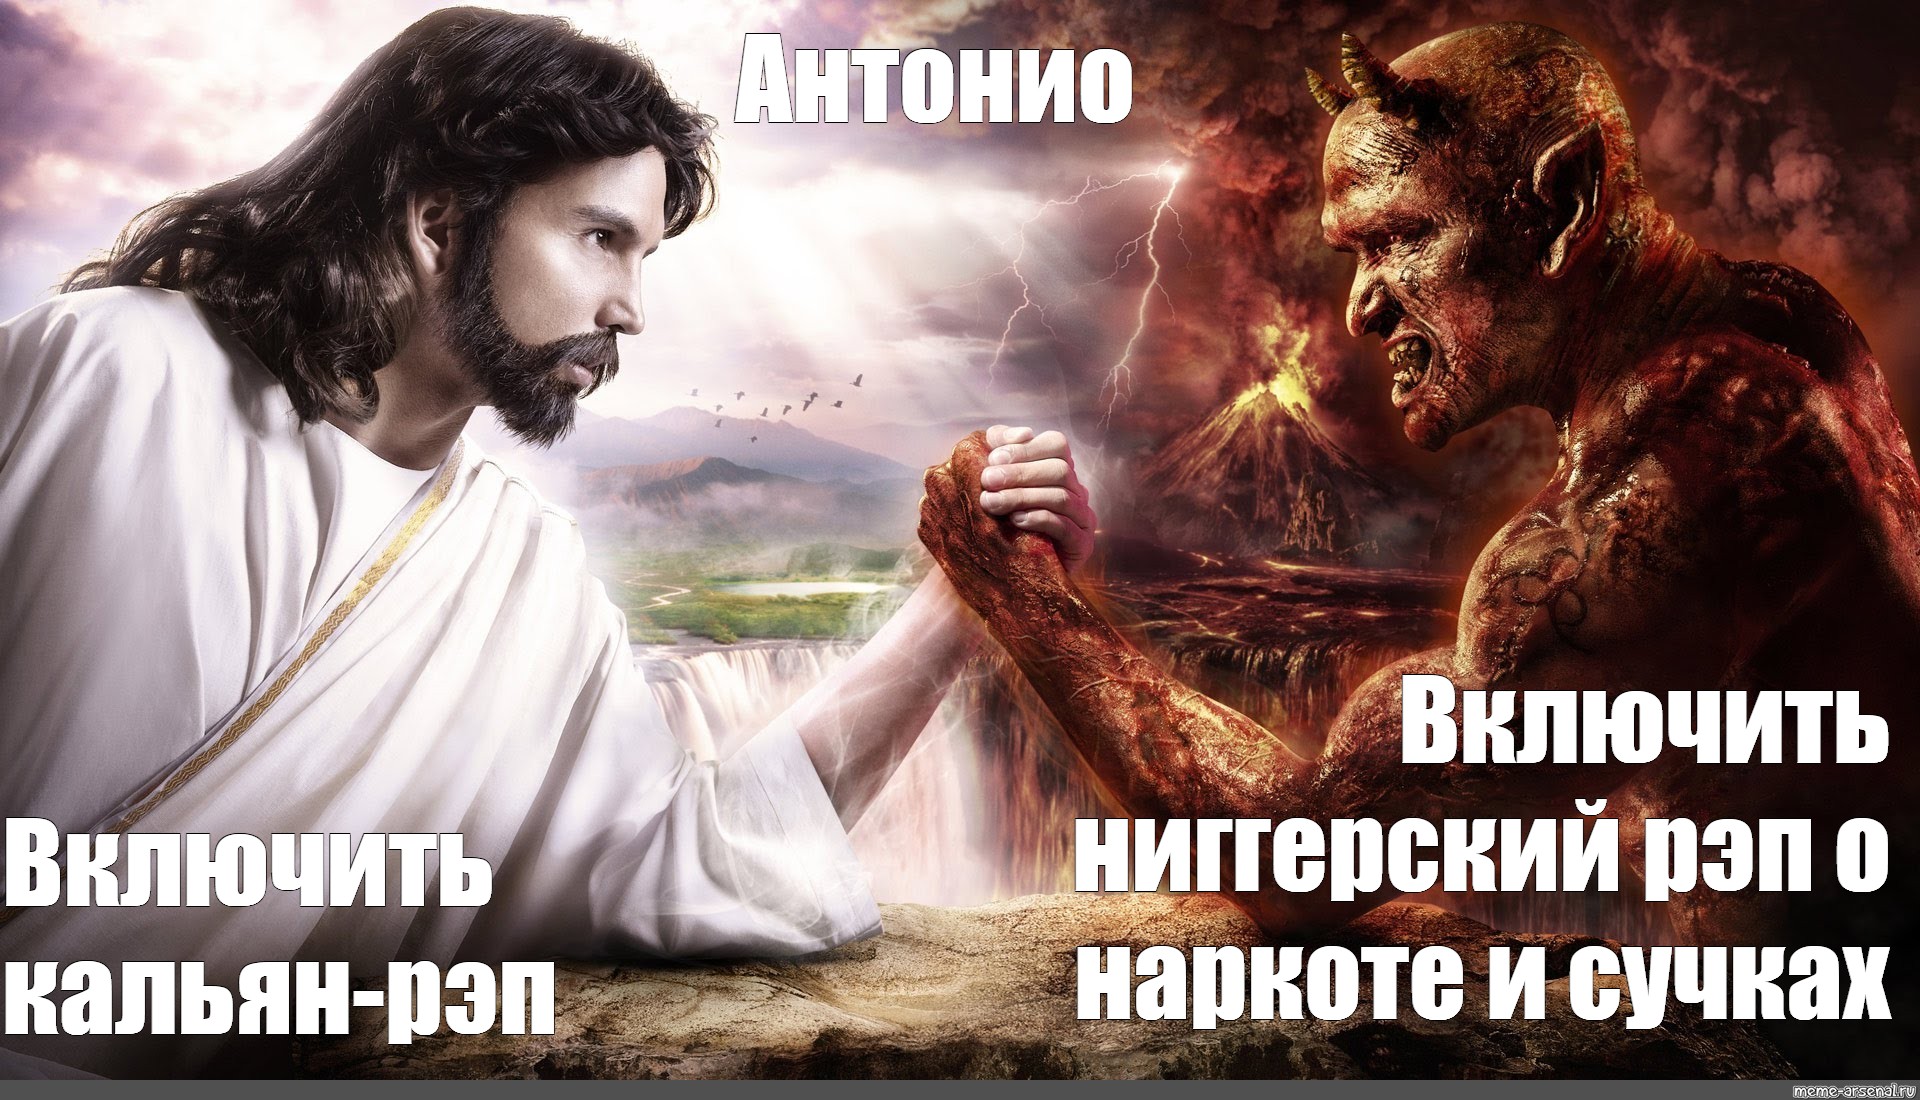 Дьявол и иисус фото